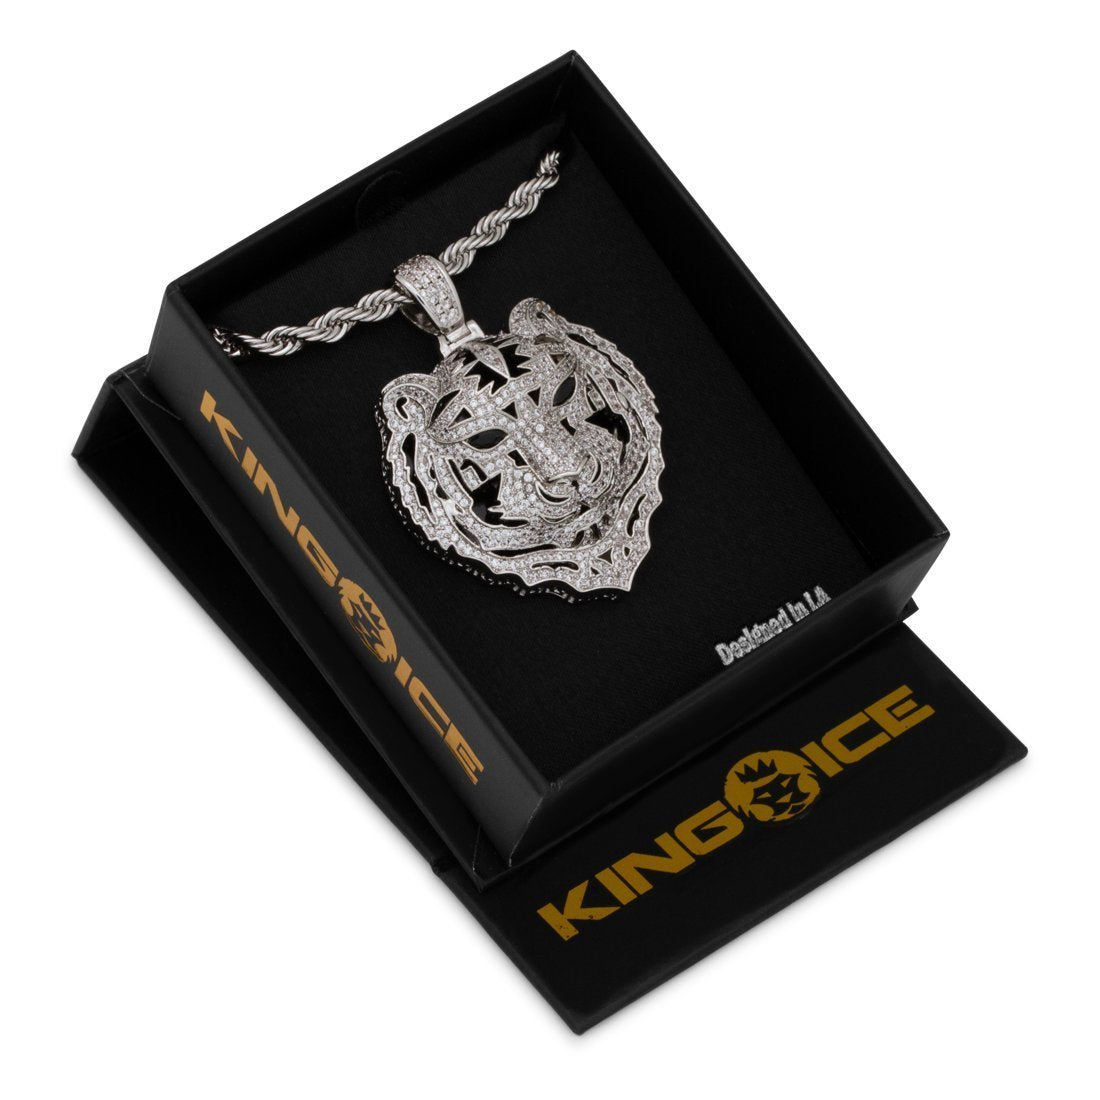 【超歓迎通販】King Ice×Designed by Snoop Dogg キングアイス×スヌープドッグ ネックレス ゴールド 187 DEEP COVER NECKLACE メンズ ゴールド